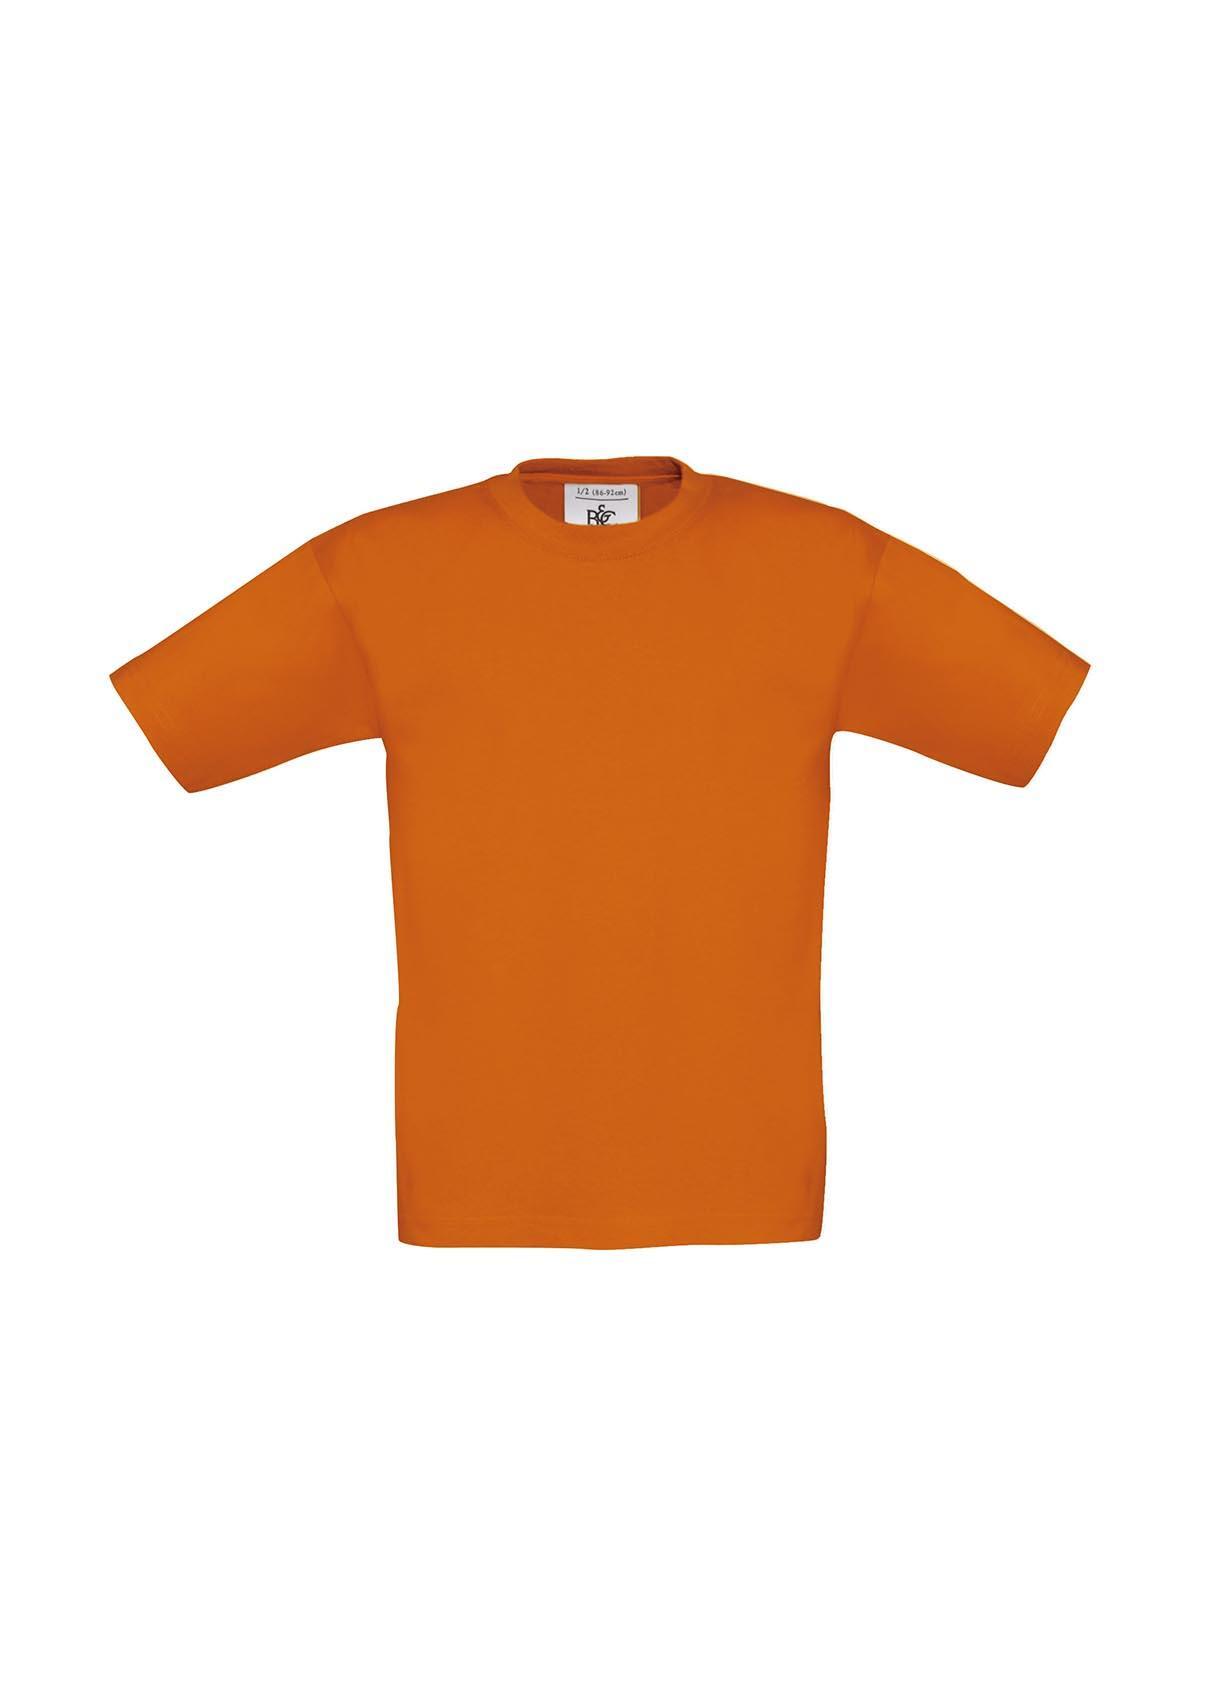 T-shirt voor kids oranje kinder shirt koningsdag